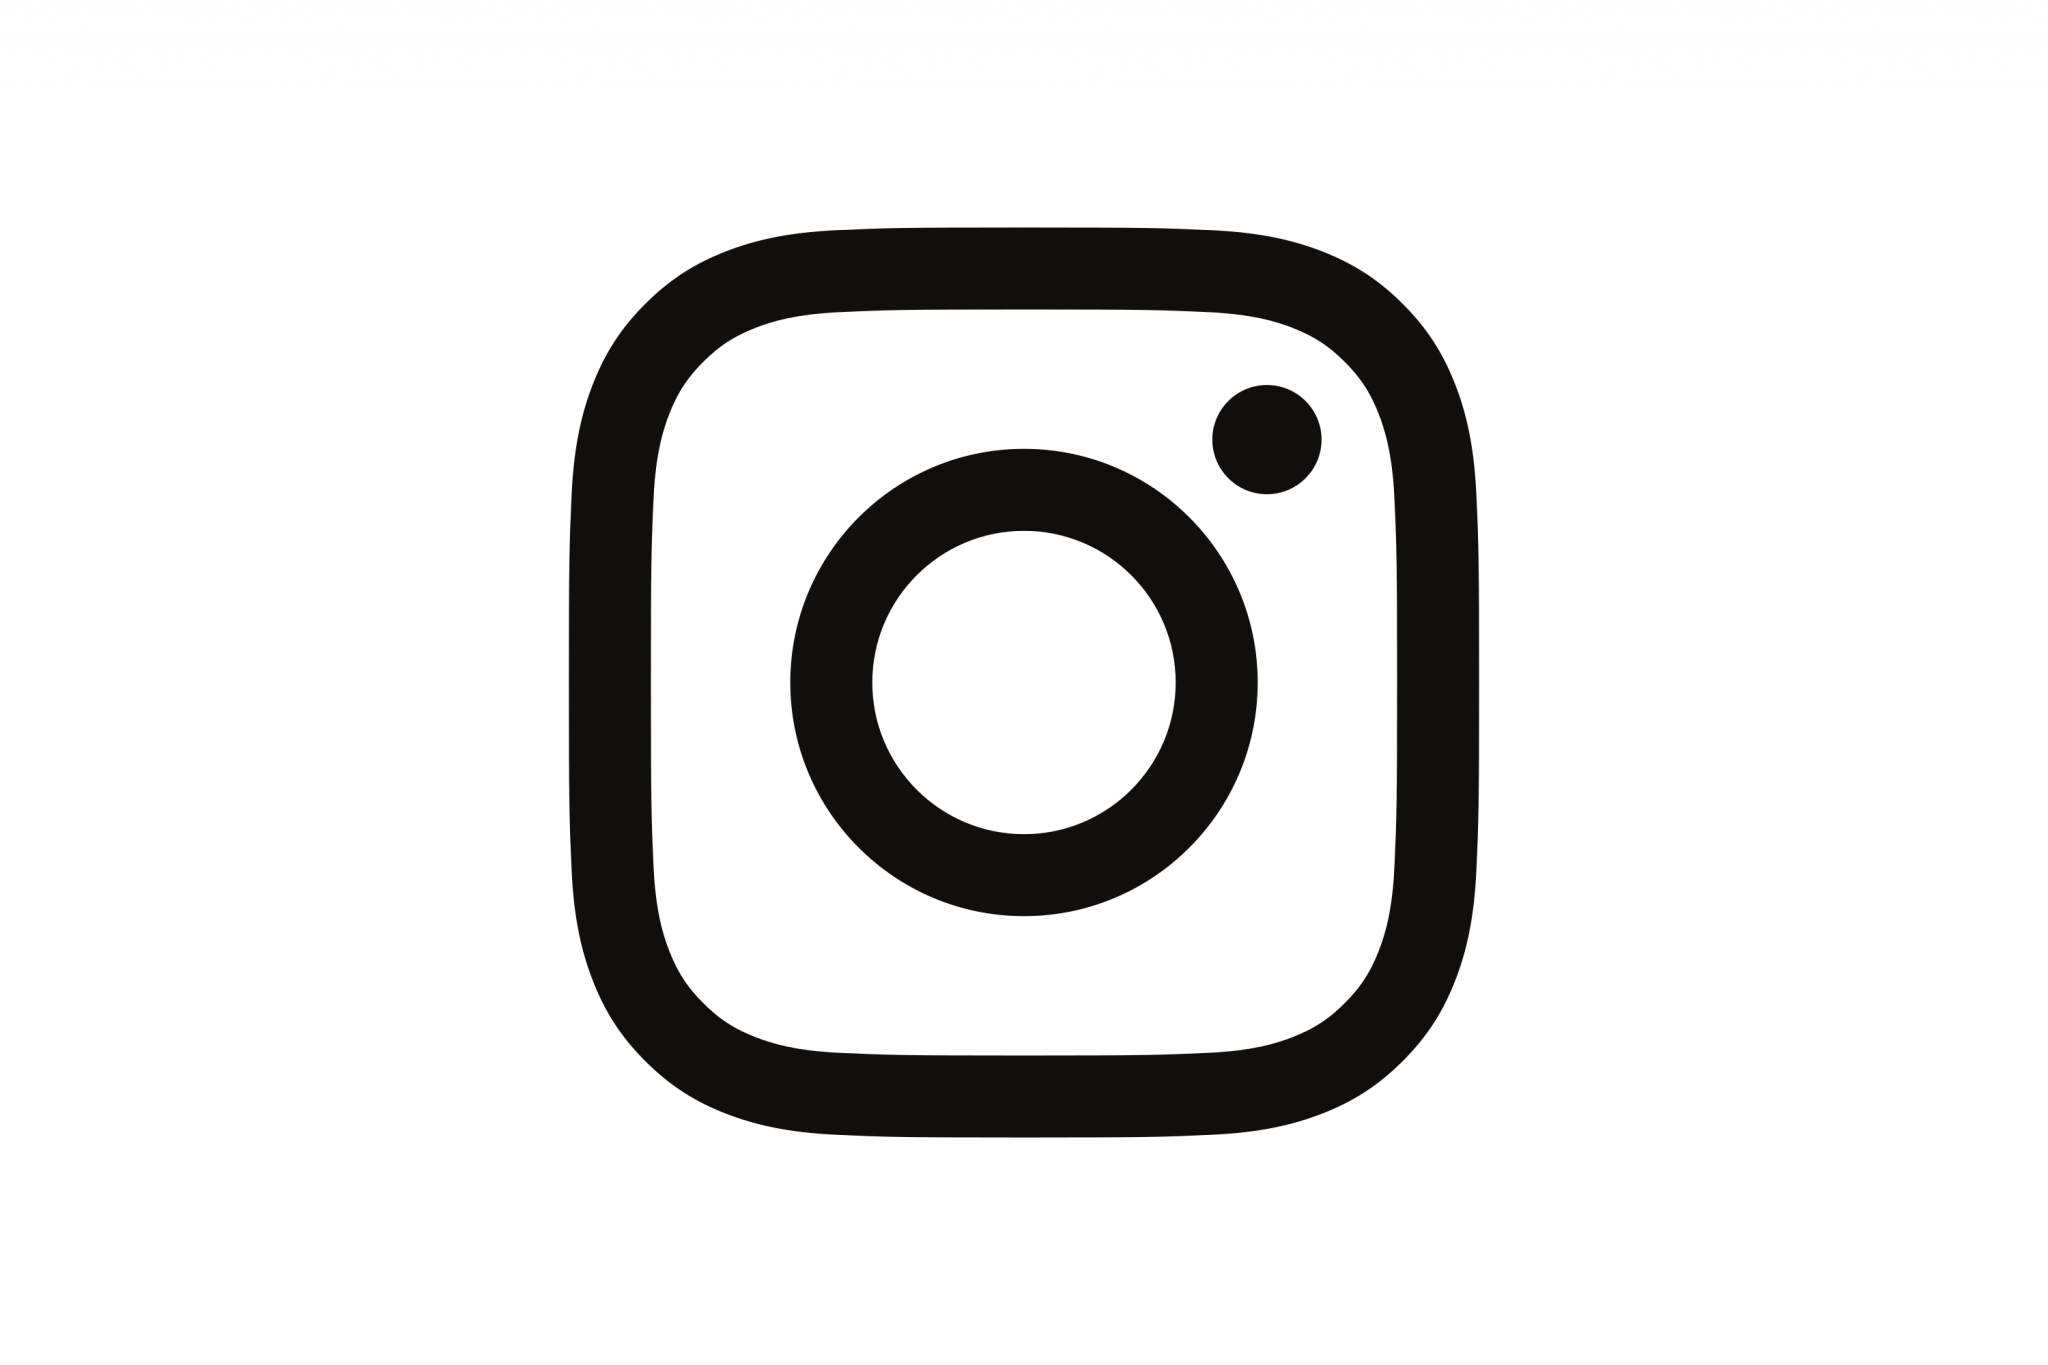 Значок инстаграма скопировать. Инстаграм. Instagram лого. Значок Инстаграм без фона. Логотип Инстаграмм на прозрачном фоне.